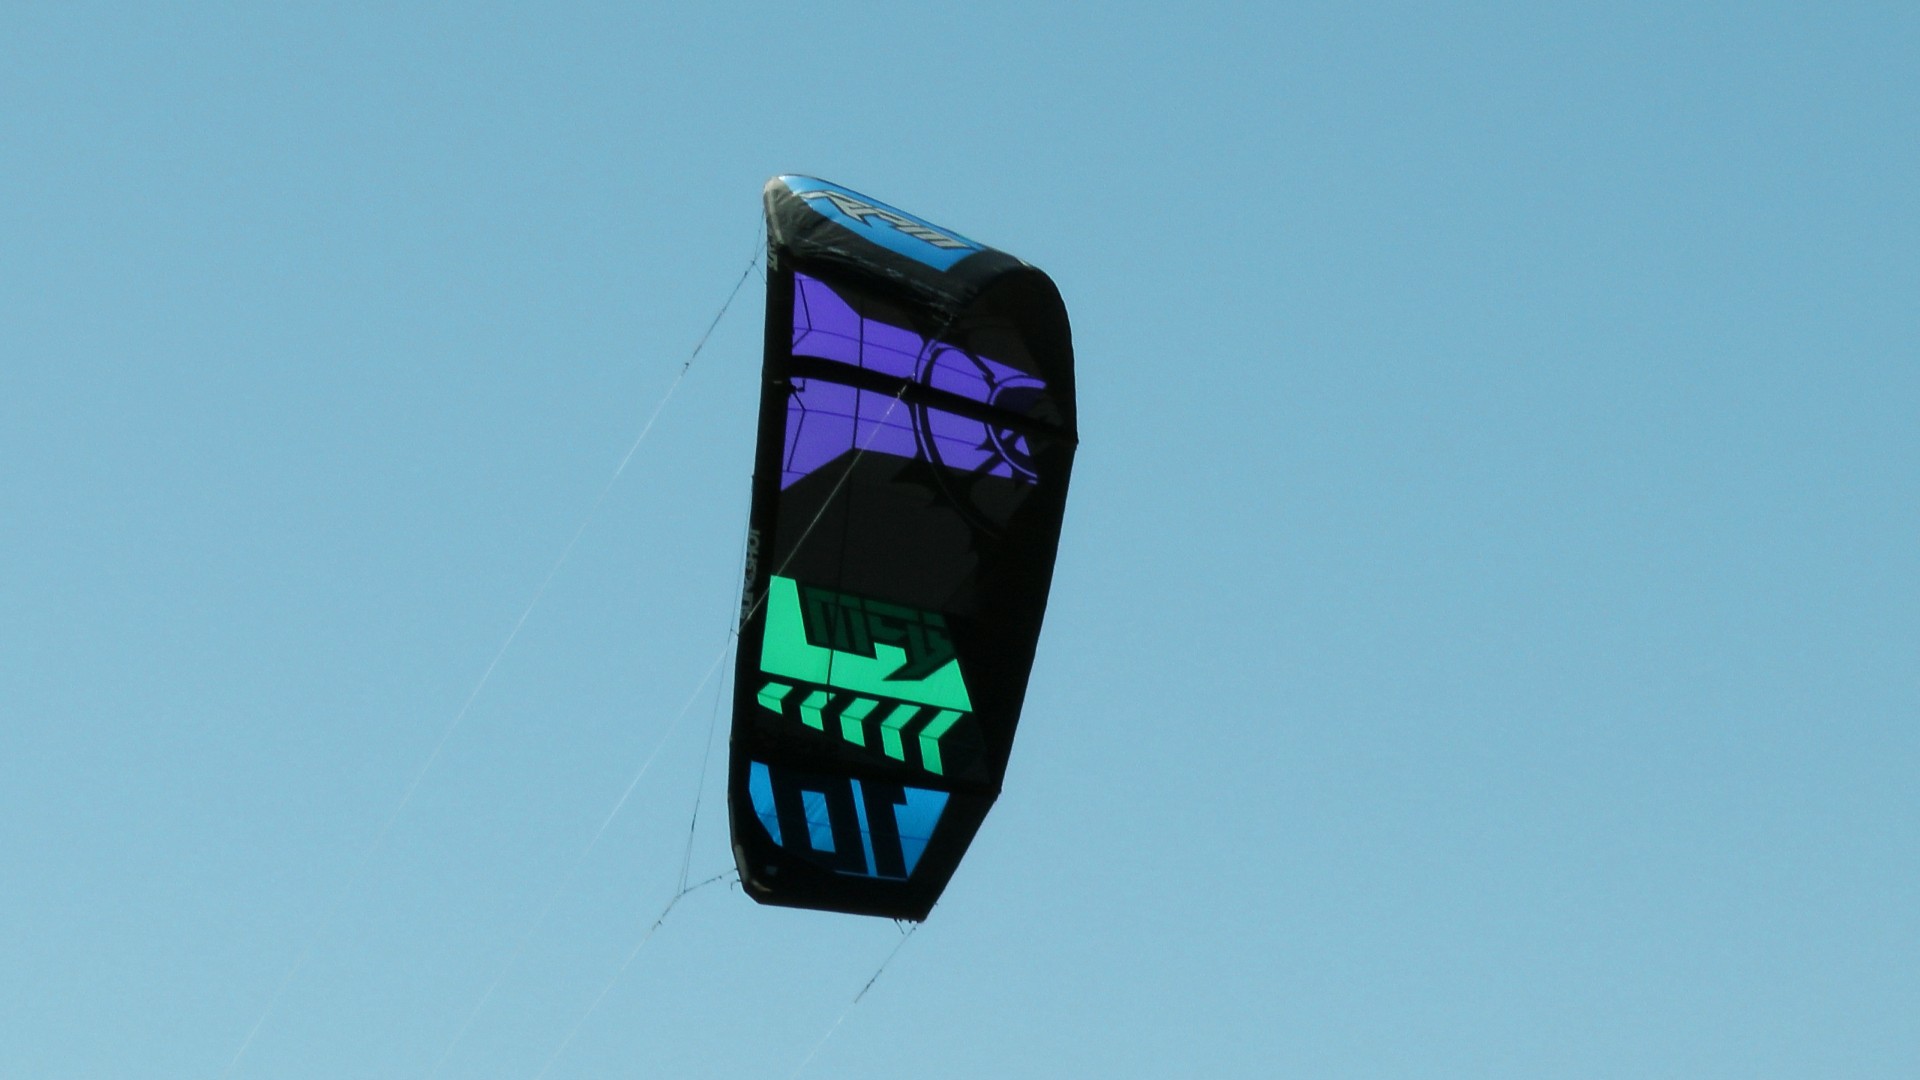 kitesurfer kiteboarder kite board kitesurfer's kite kitesurfer free photo